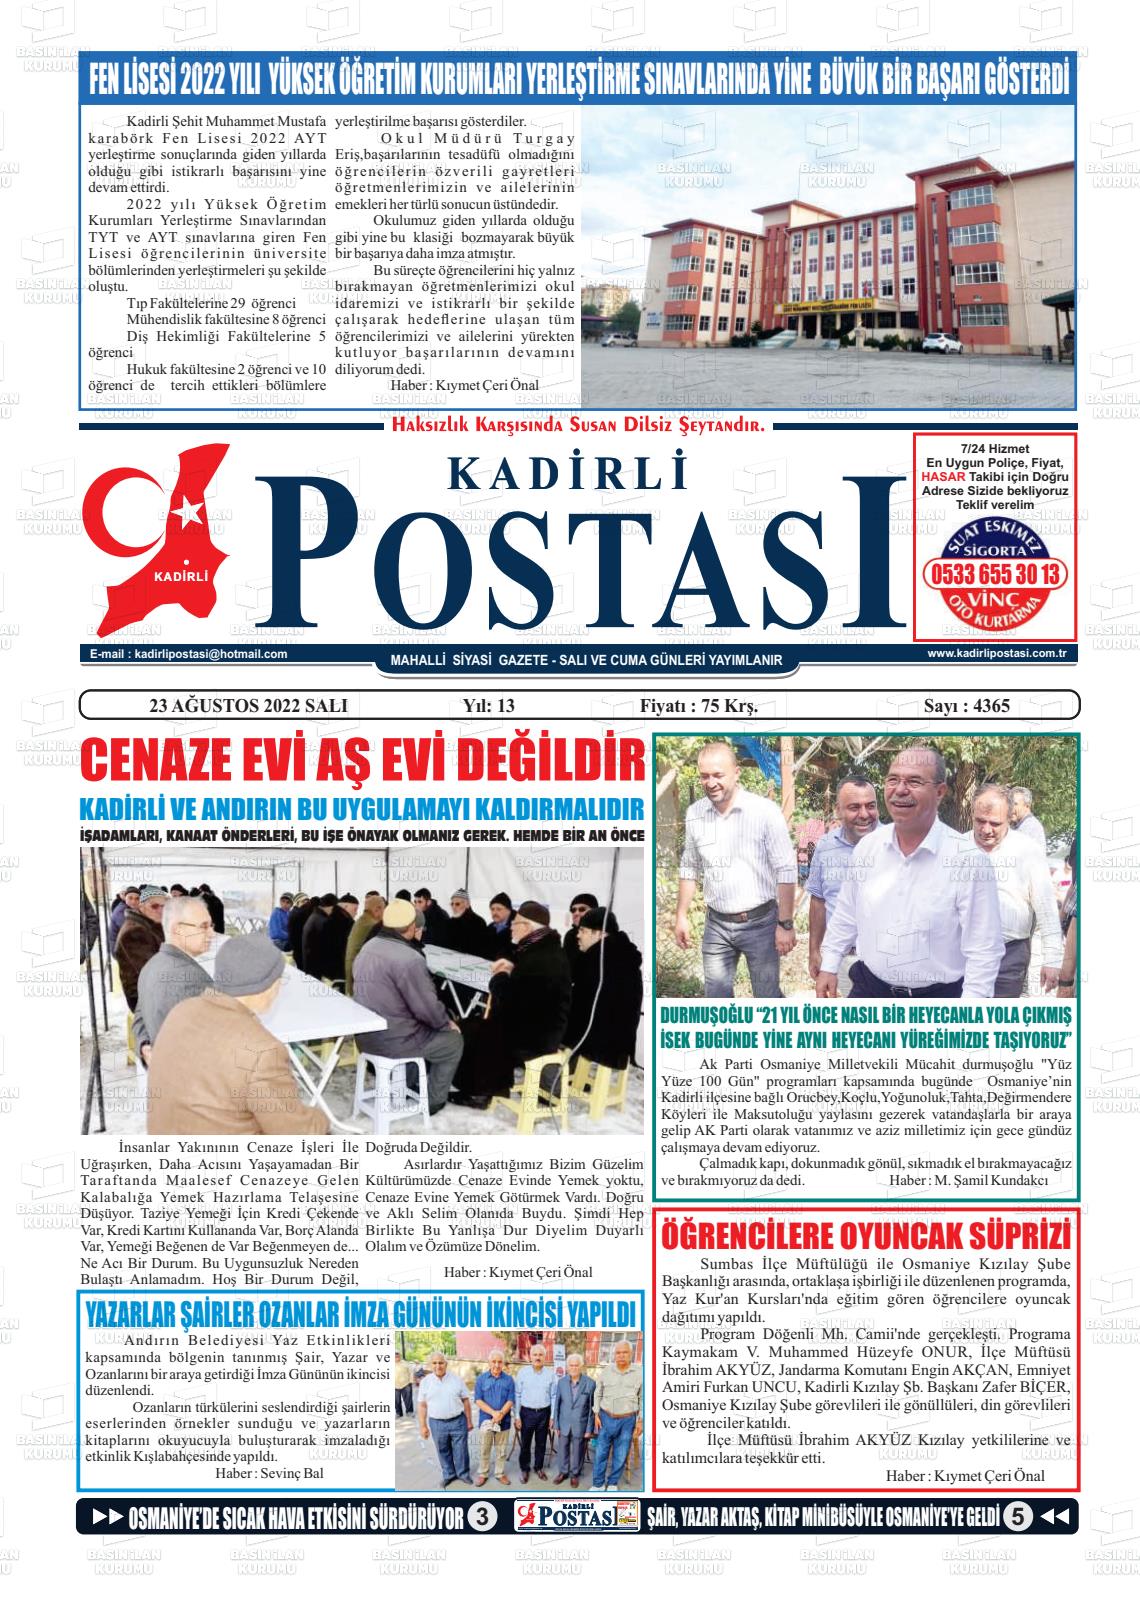 23 Ağustos 2022 Kadirli Postası Gazete Manşeti